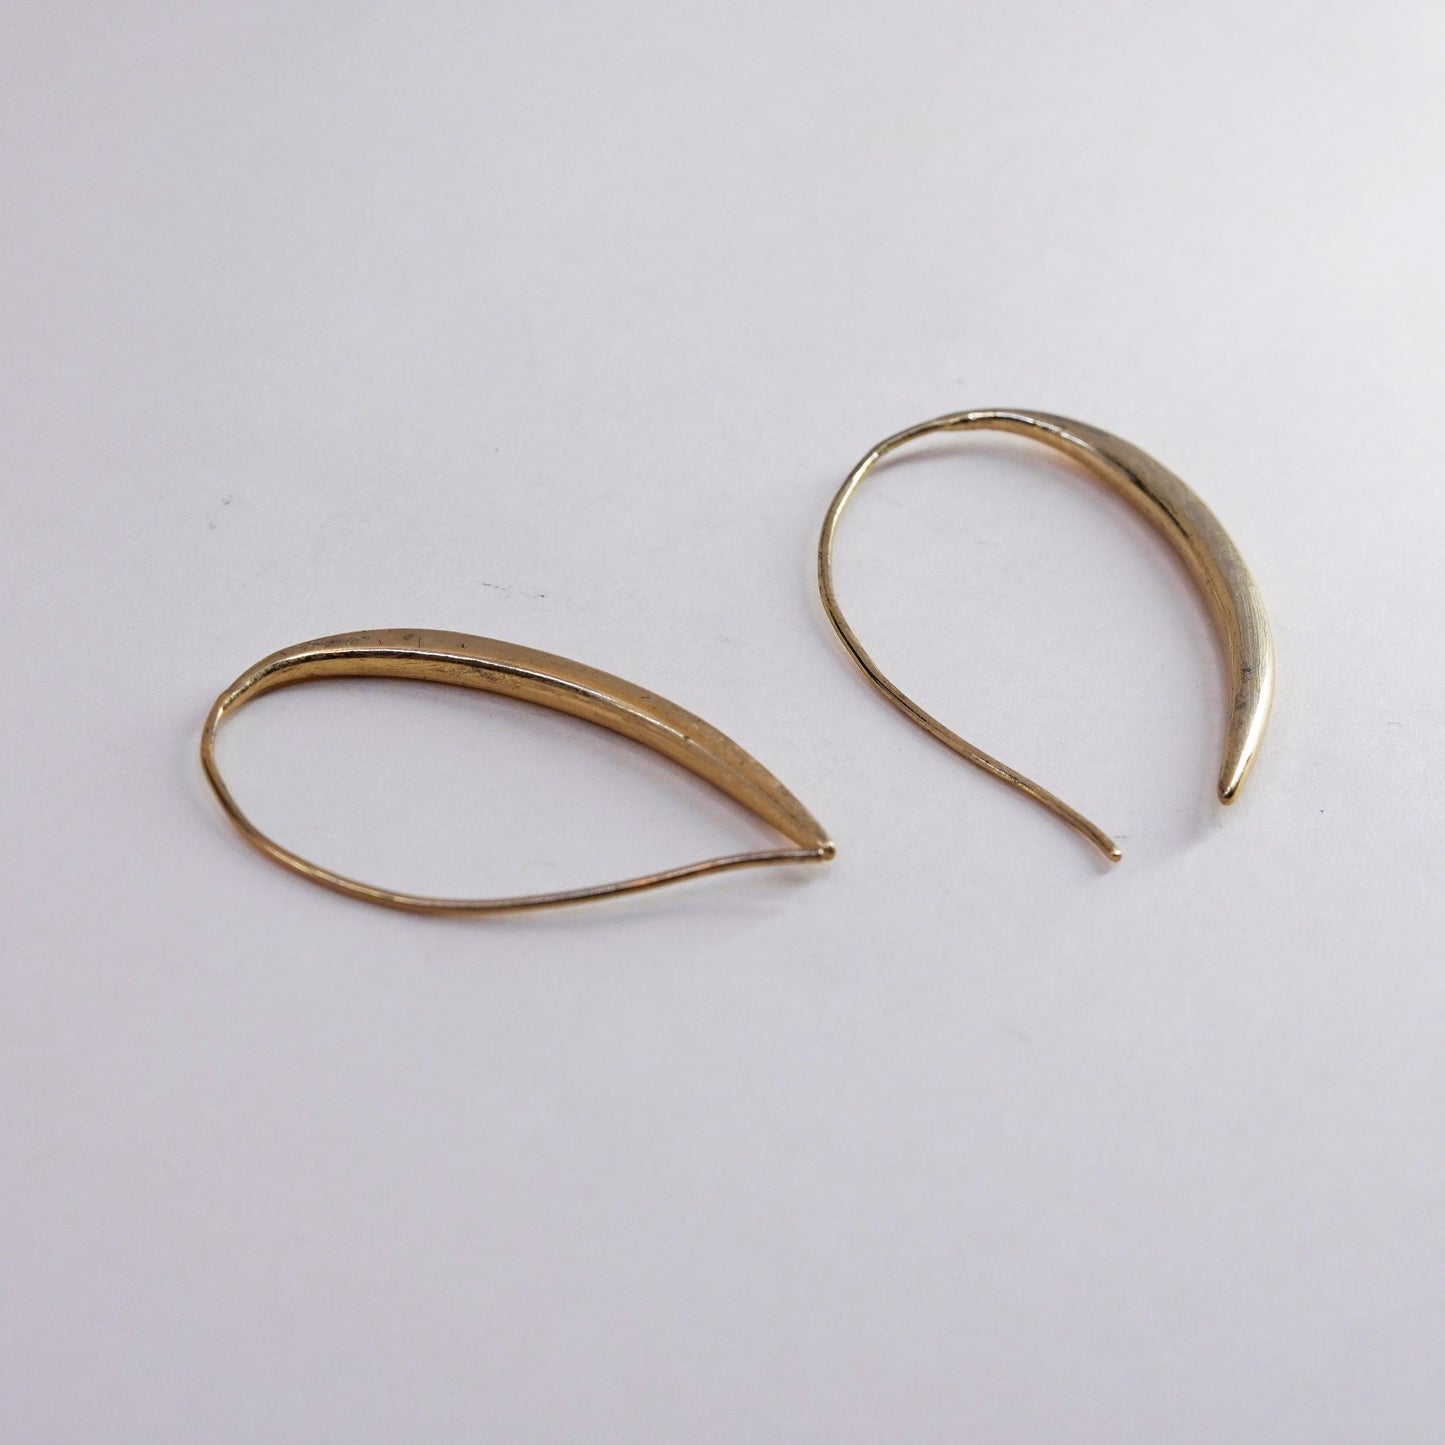 1.5”, Vintage vermeil gold over sterling silver loop earrings, minimalist